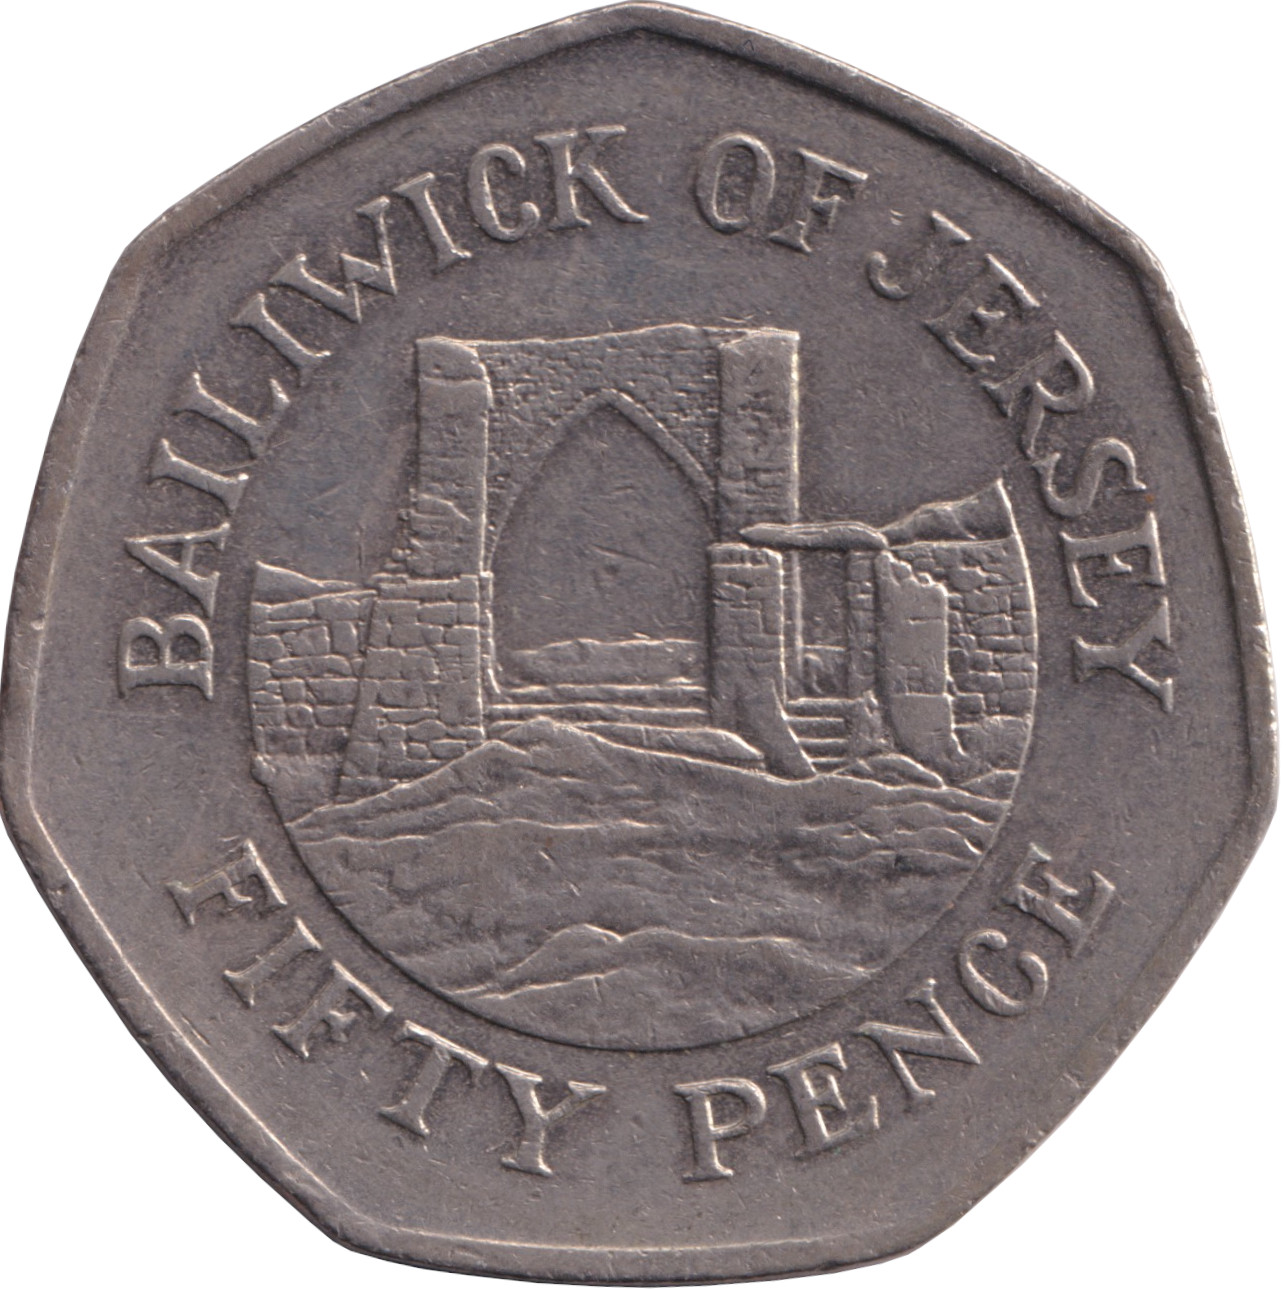 50 pence - Elizabeth II - Buste mature - Grand module